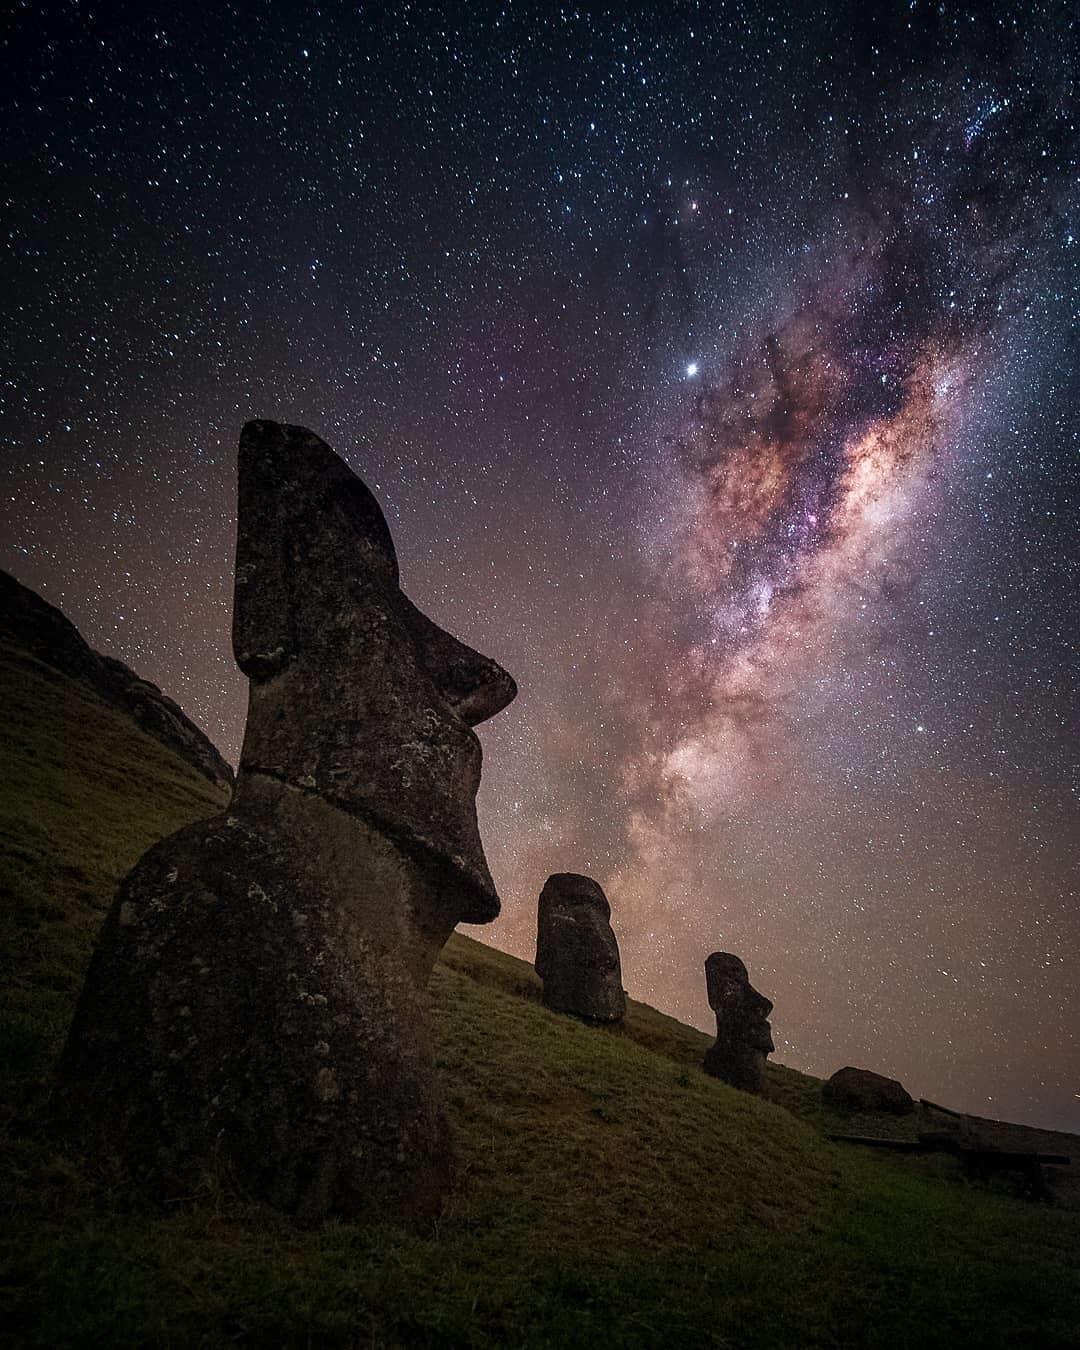  复活节岛的石像与星空，来自摄影师Alyn Wallace。 